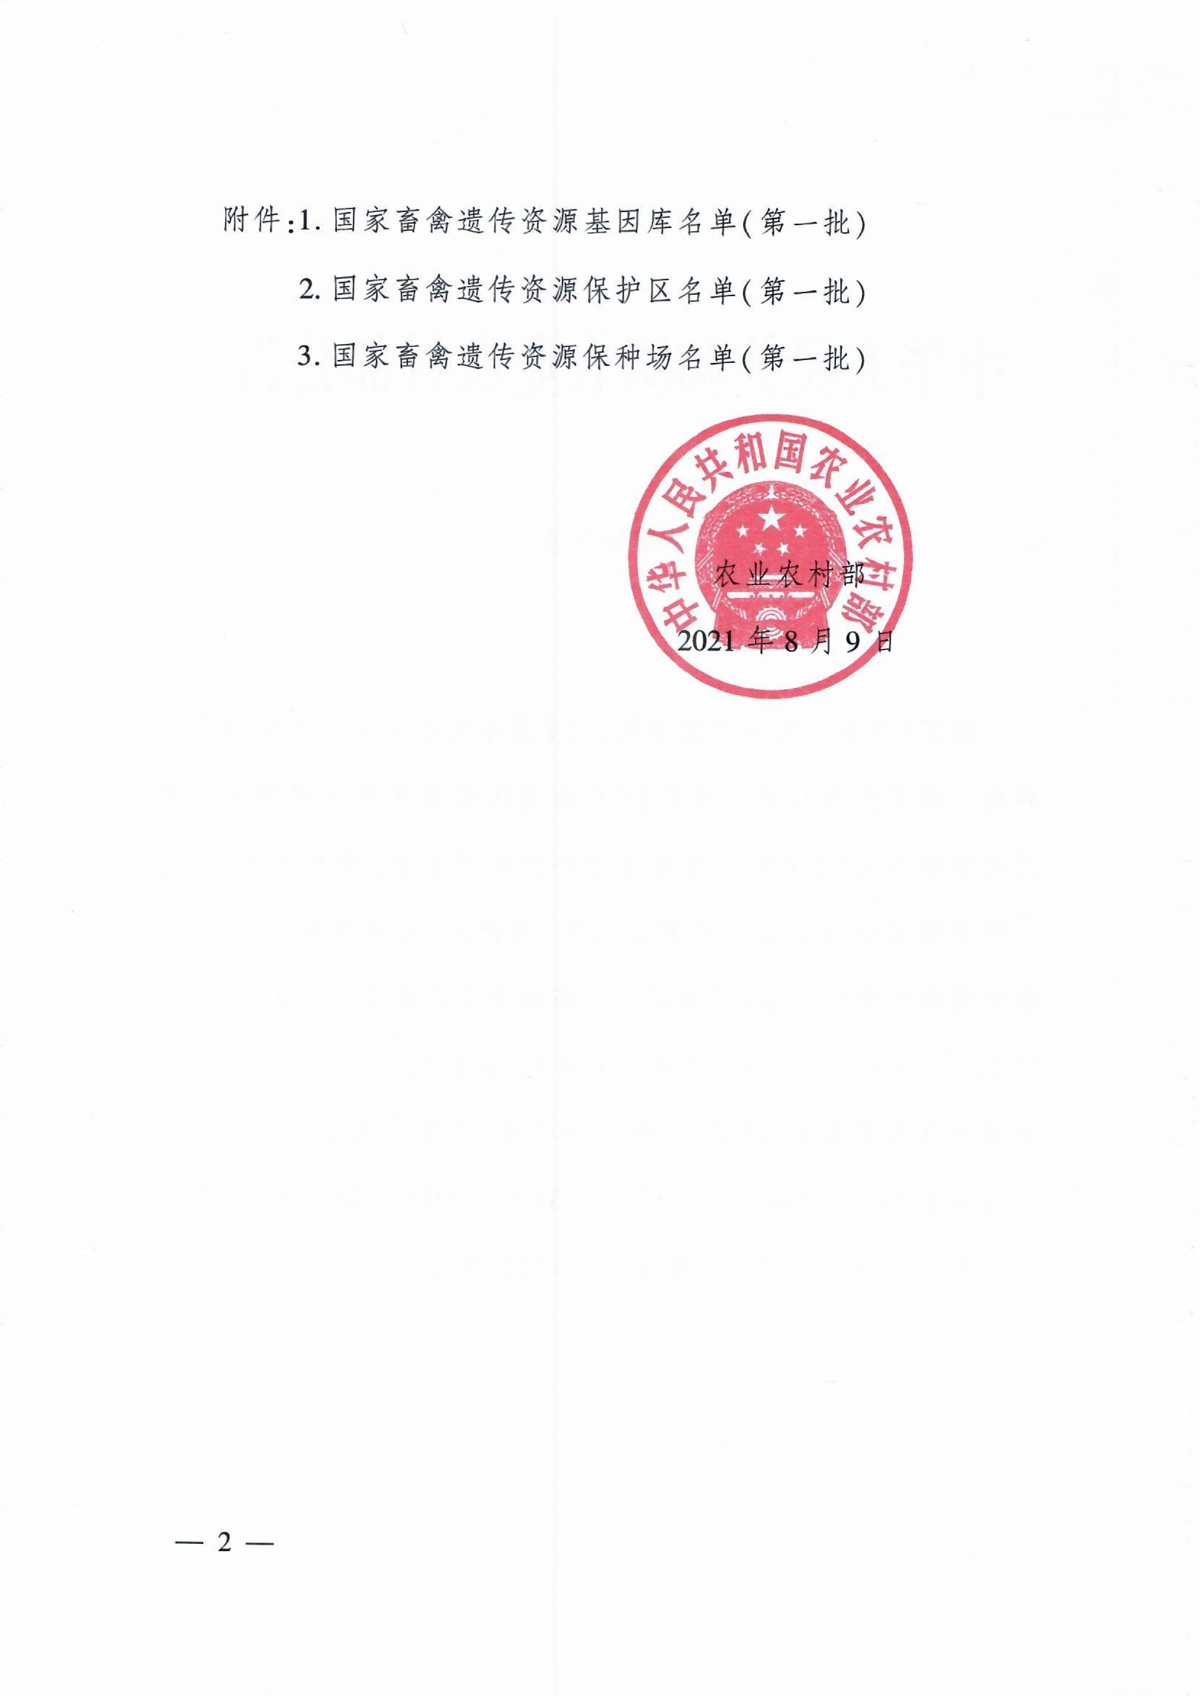 中华人民共和国农业农村部公告-第453号(国家畜禽遗传资源基因库、保护区、保种场）-2.jpg